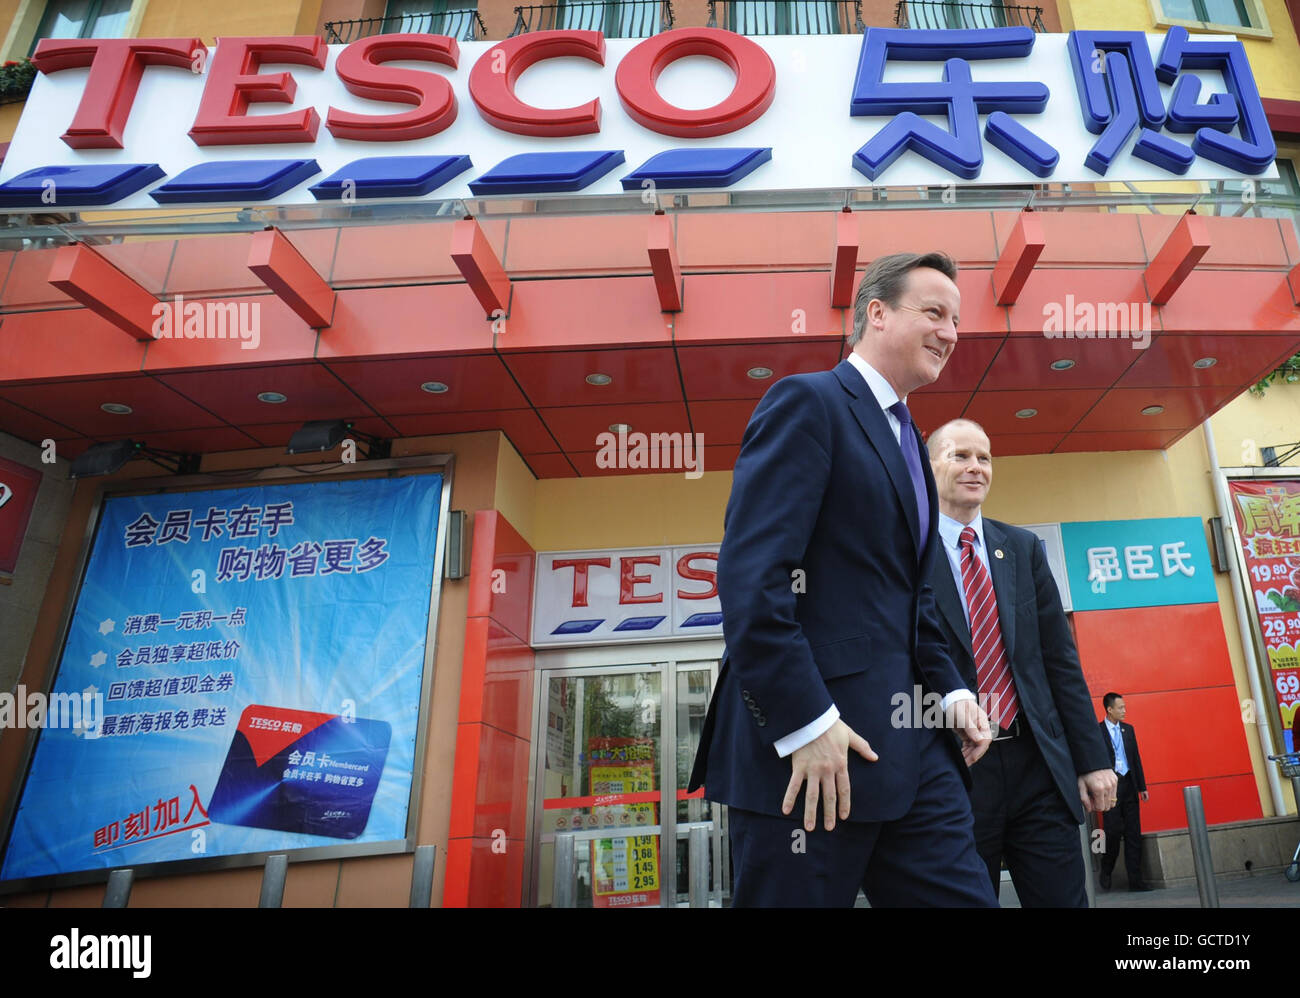 Le premier jour de sa visite en Chine, le Premier ministre britannique David Cameron se rend aujourd’hui dans un supermarché Tesco, accompagné d’une délégation de 50 entreprises britanniques de premier plan. Banque D'Images